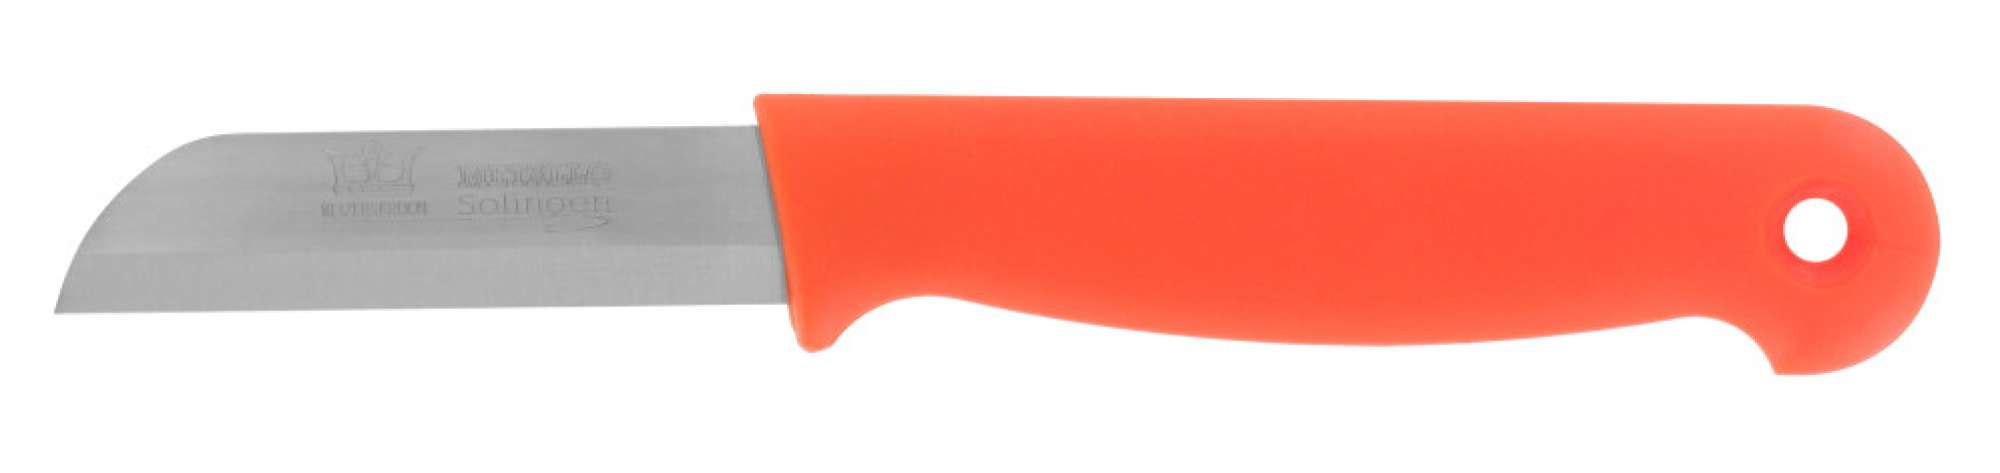 956019-X - Strip steel knives - Keizerskroon Metallo